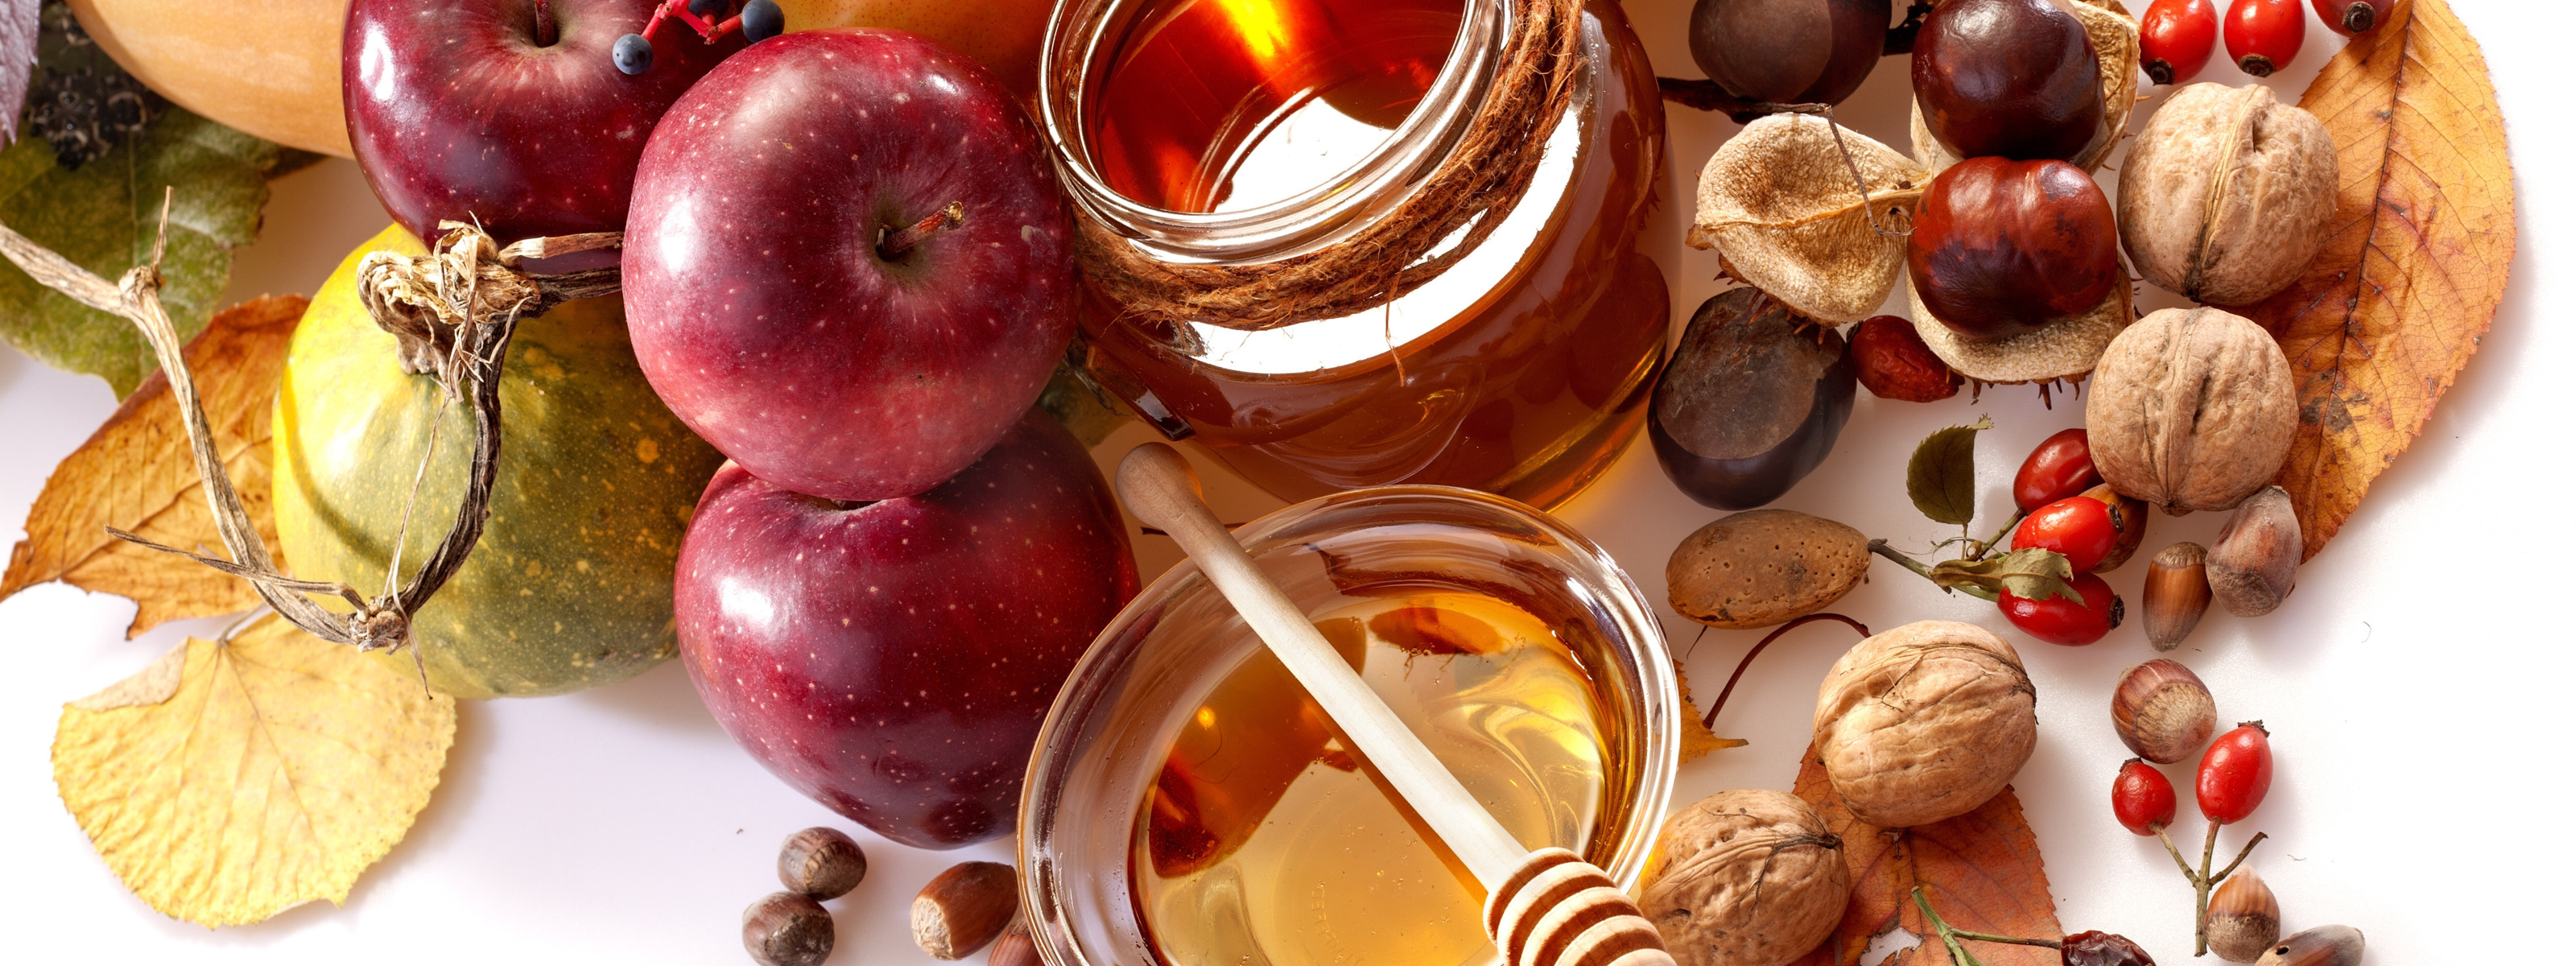 Фрукты орехи мед. Мед и фрукты. Яблоки мед орехи. Яблоки с медом. Мед с фруктами и орехами.